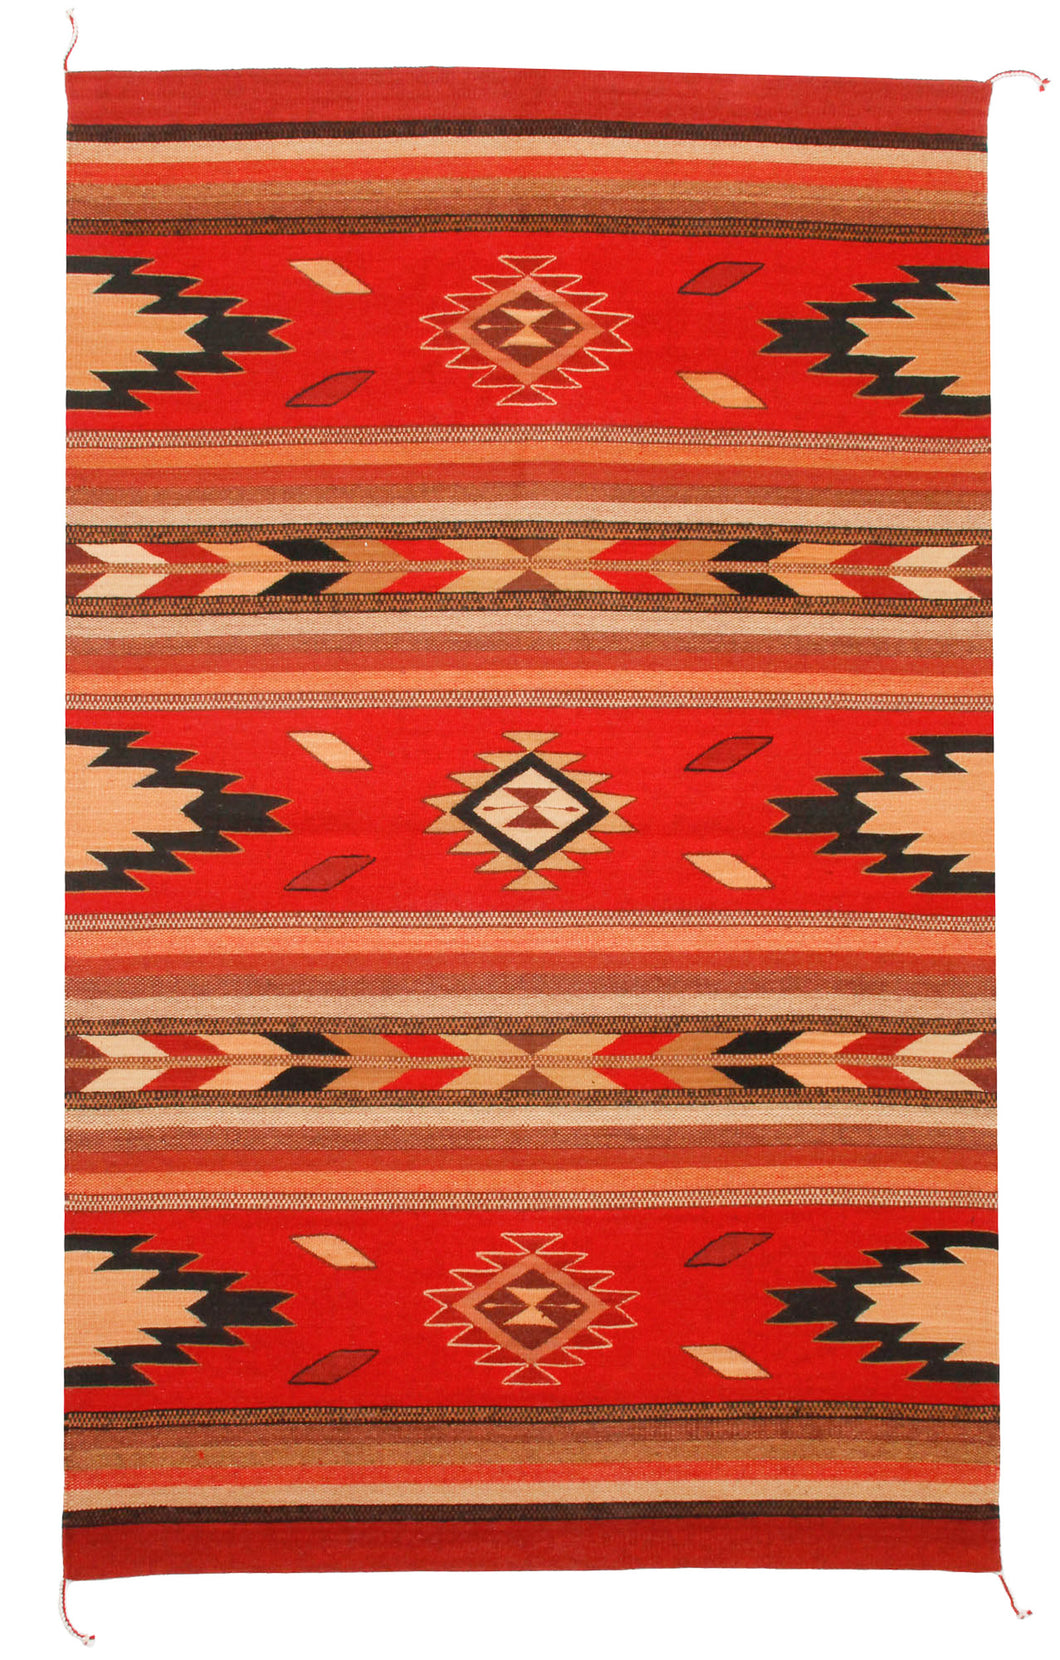 Handwoven Zapotec Indian Rug - Embers Rojo Wool Oaxacan Rug